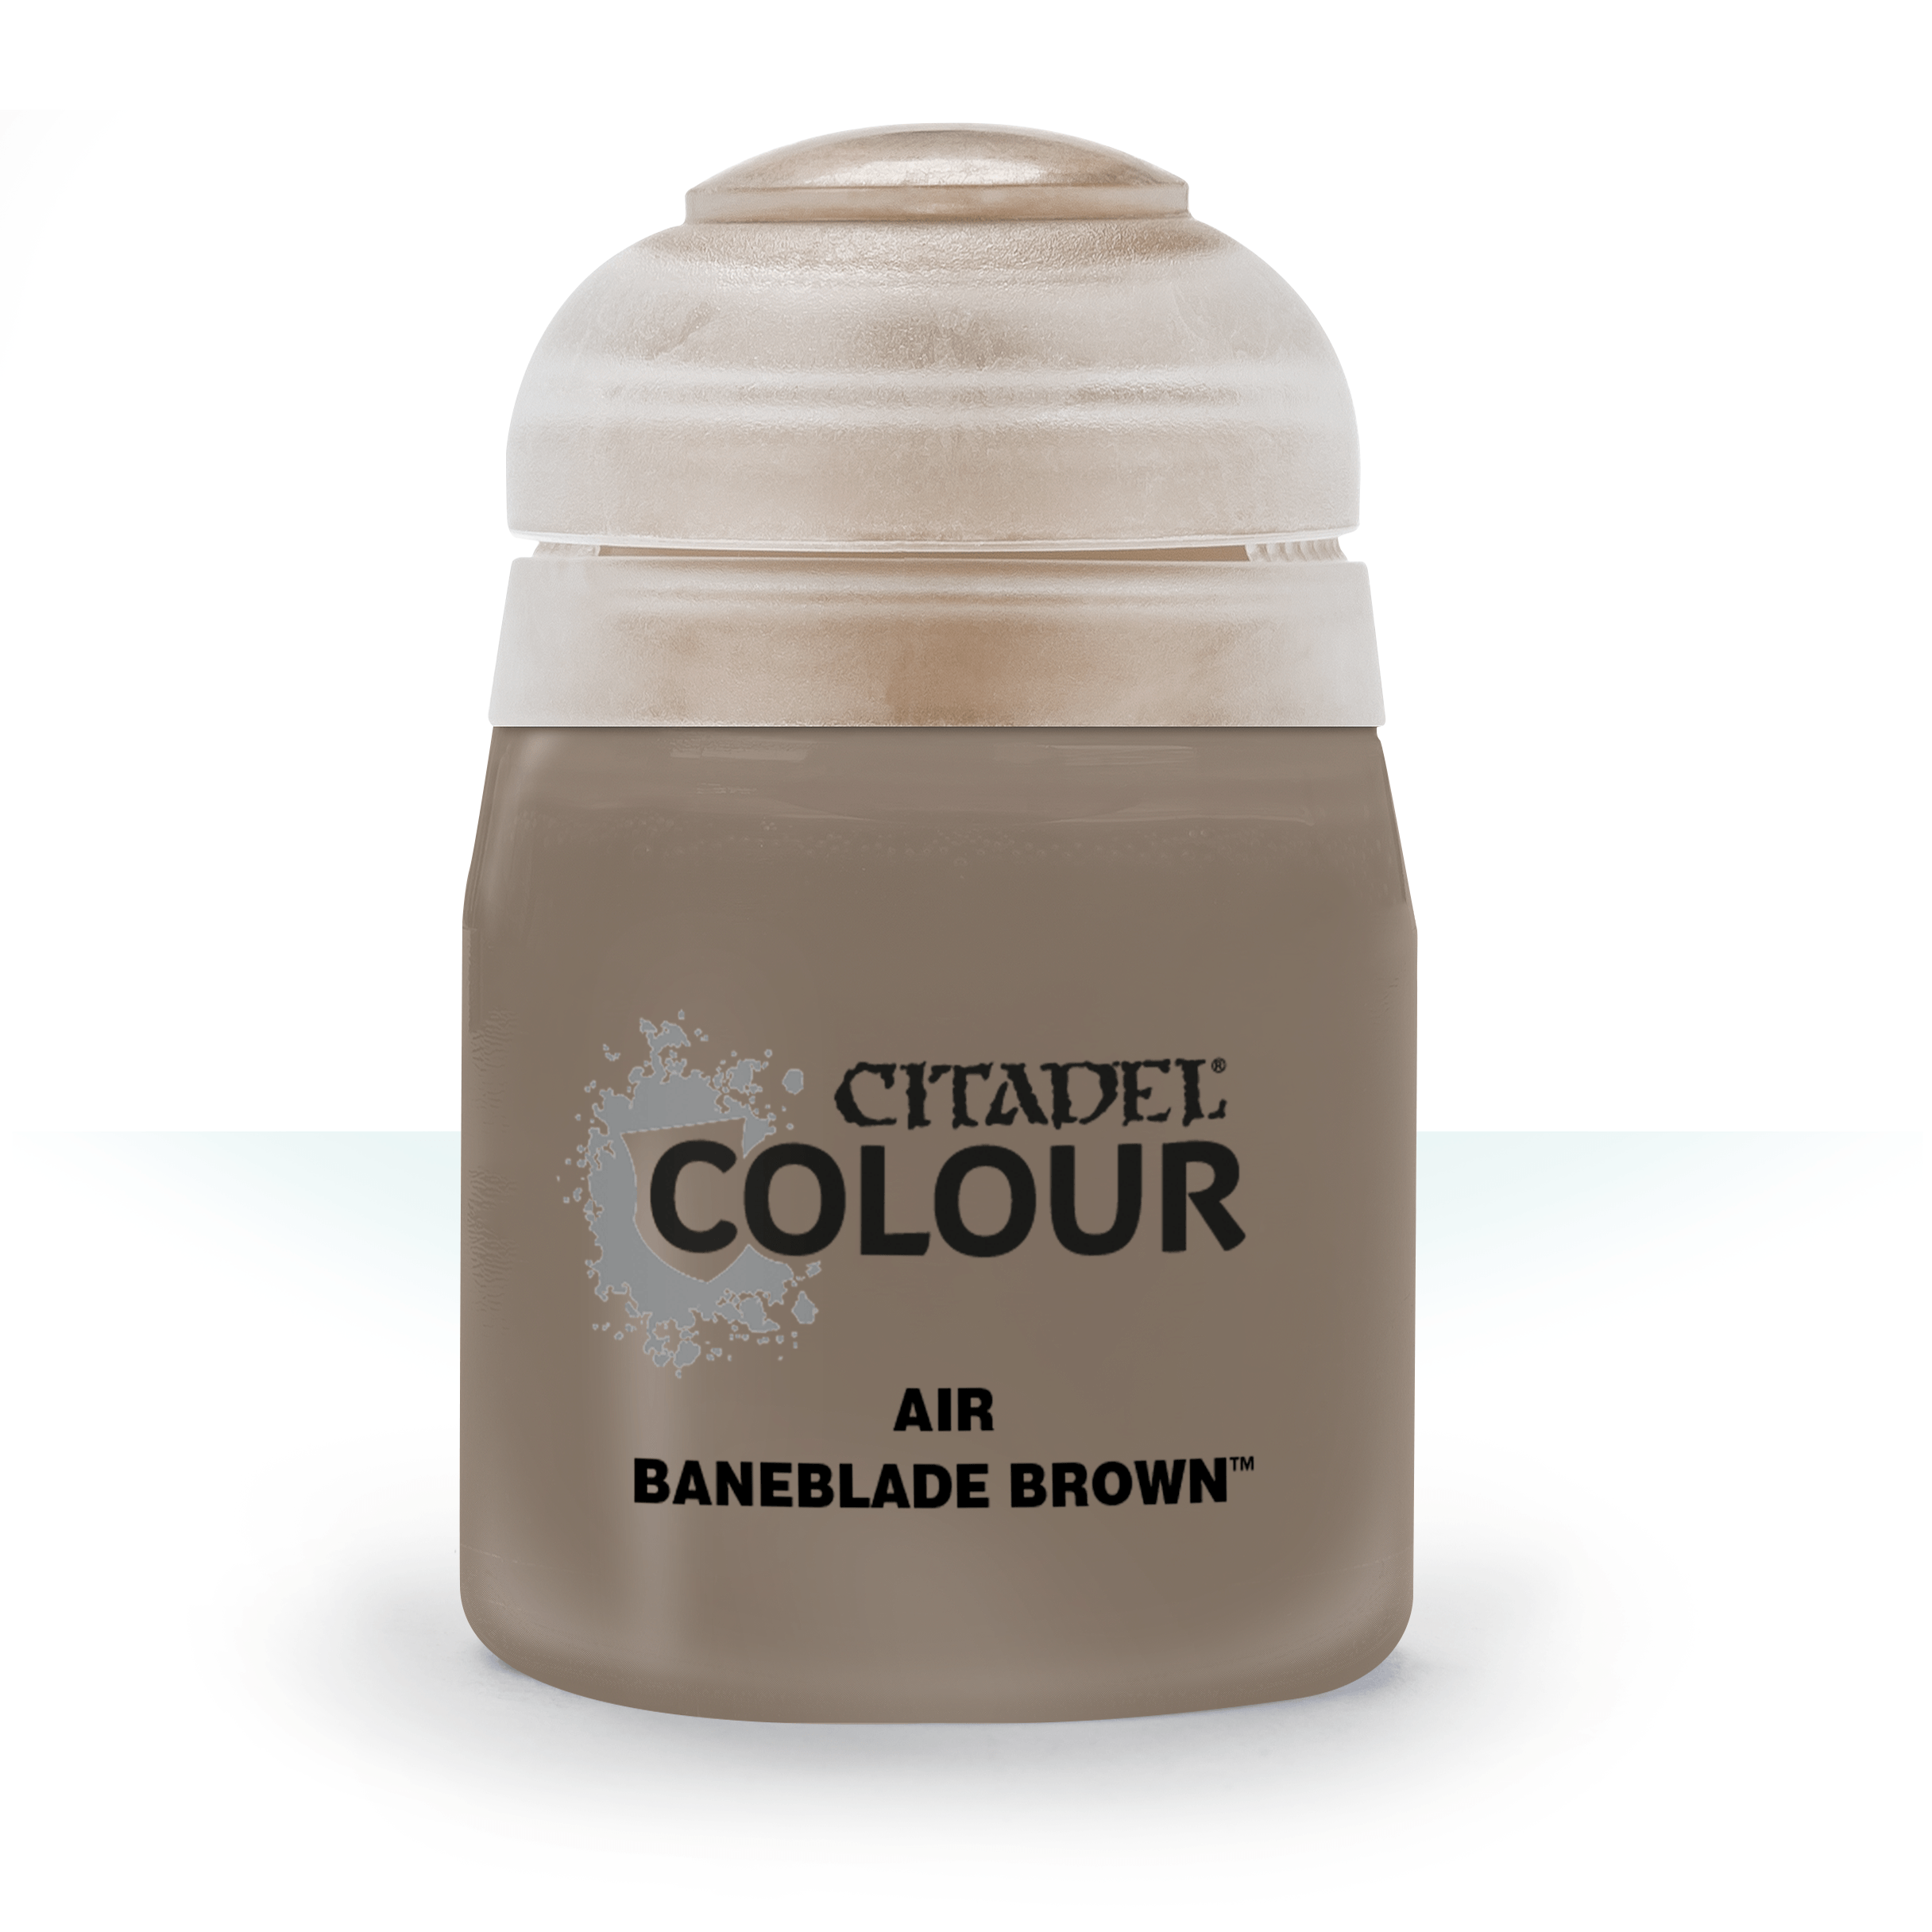 Air Baneblade Brown - Citadel Colour - 24 ml